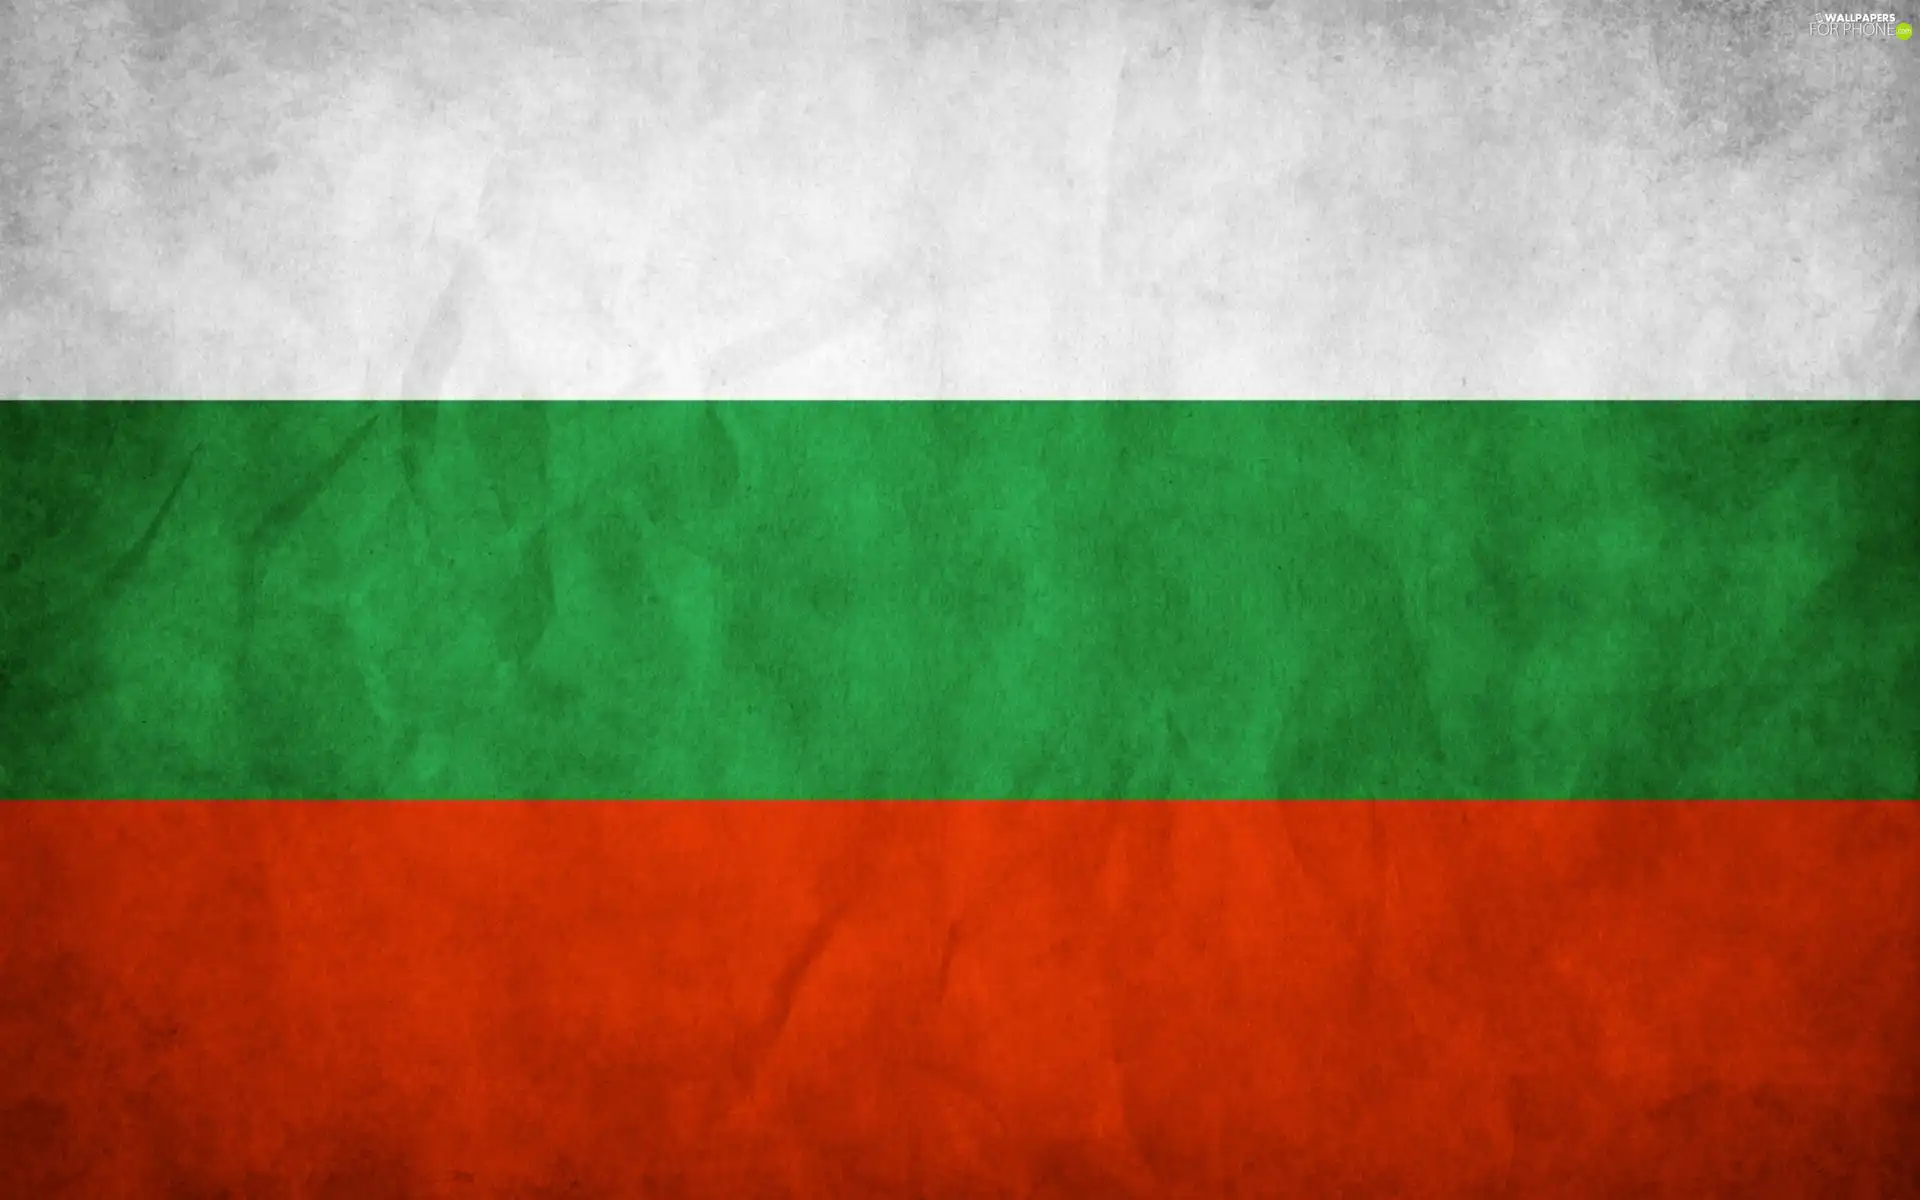 Bulgaria, flag, Member